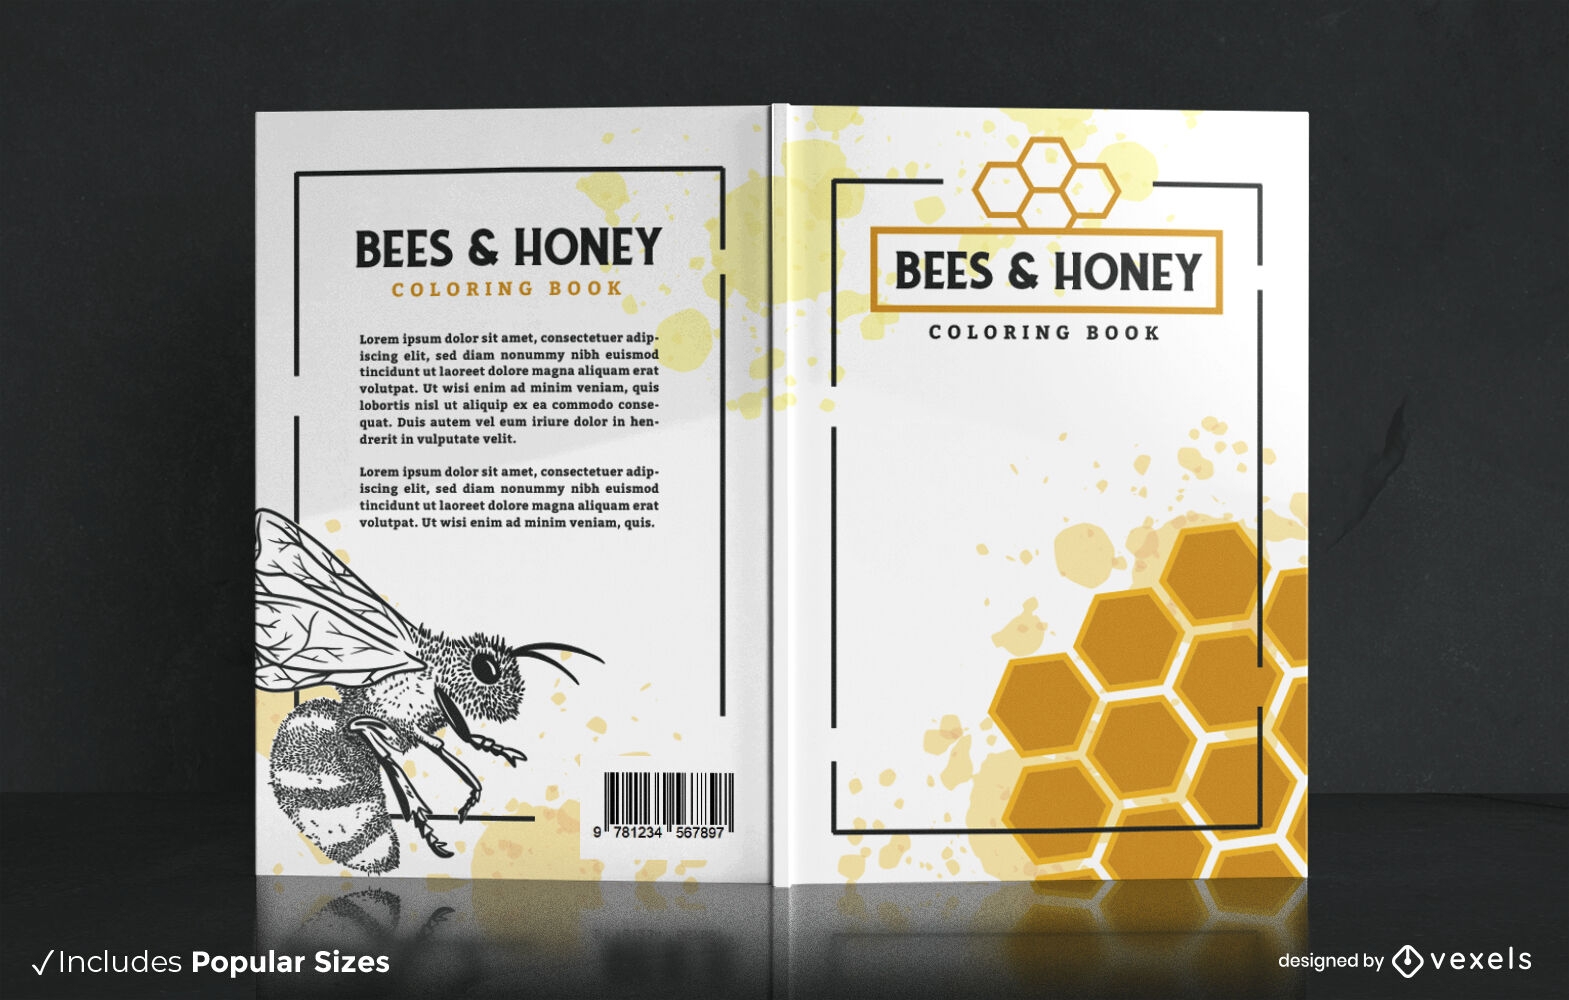 Dise?o de portada de libro de abejas y miel.